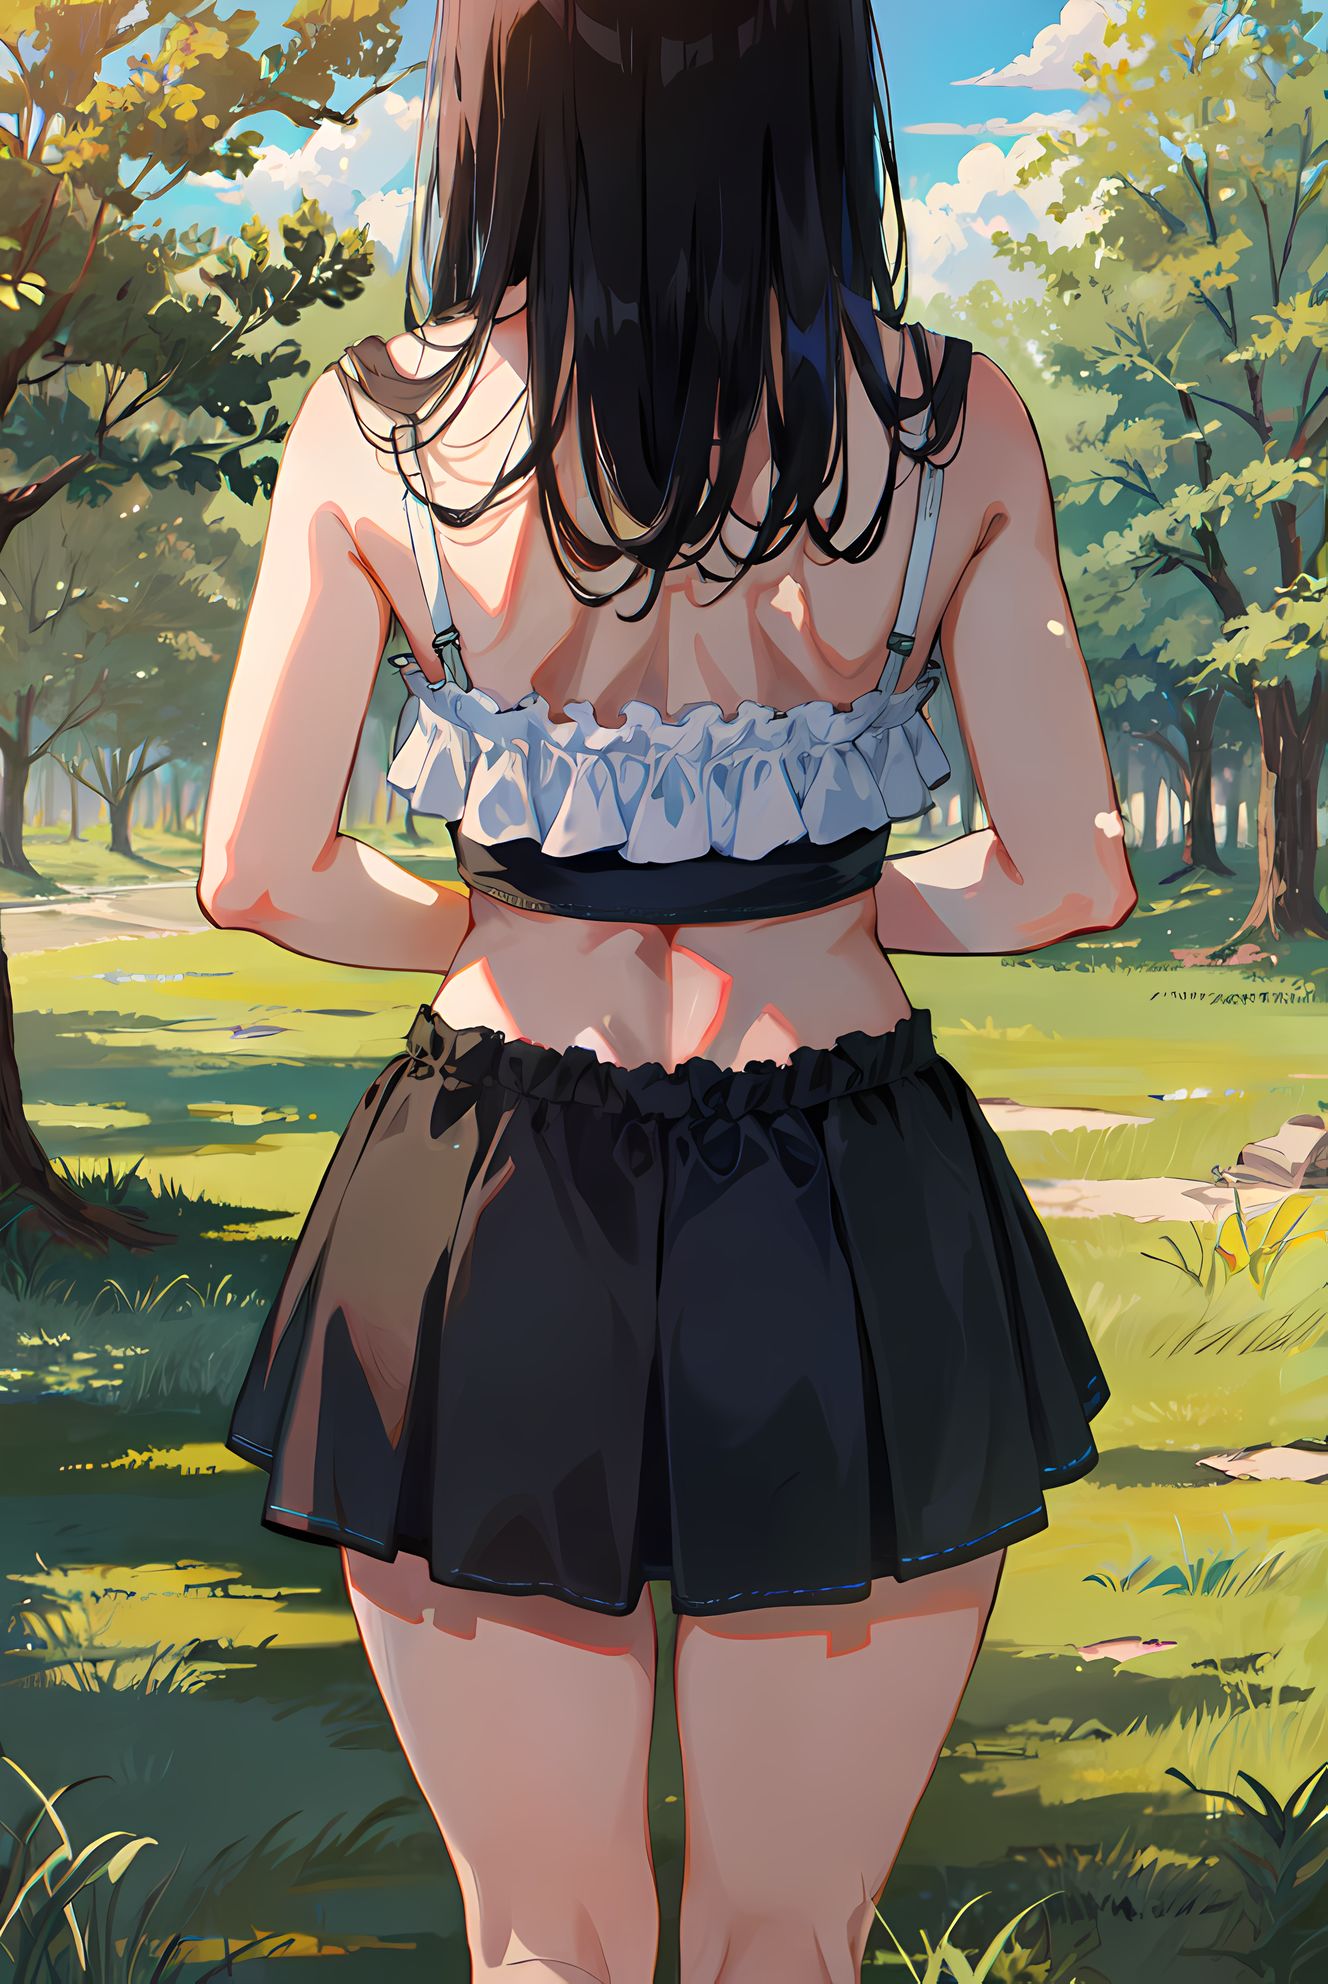 树草天空，长发少女背影下的露臂黑裙与秋叶氤氲间。